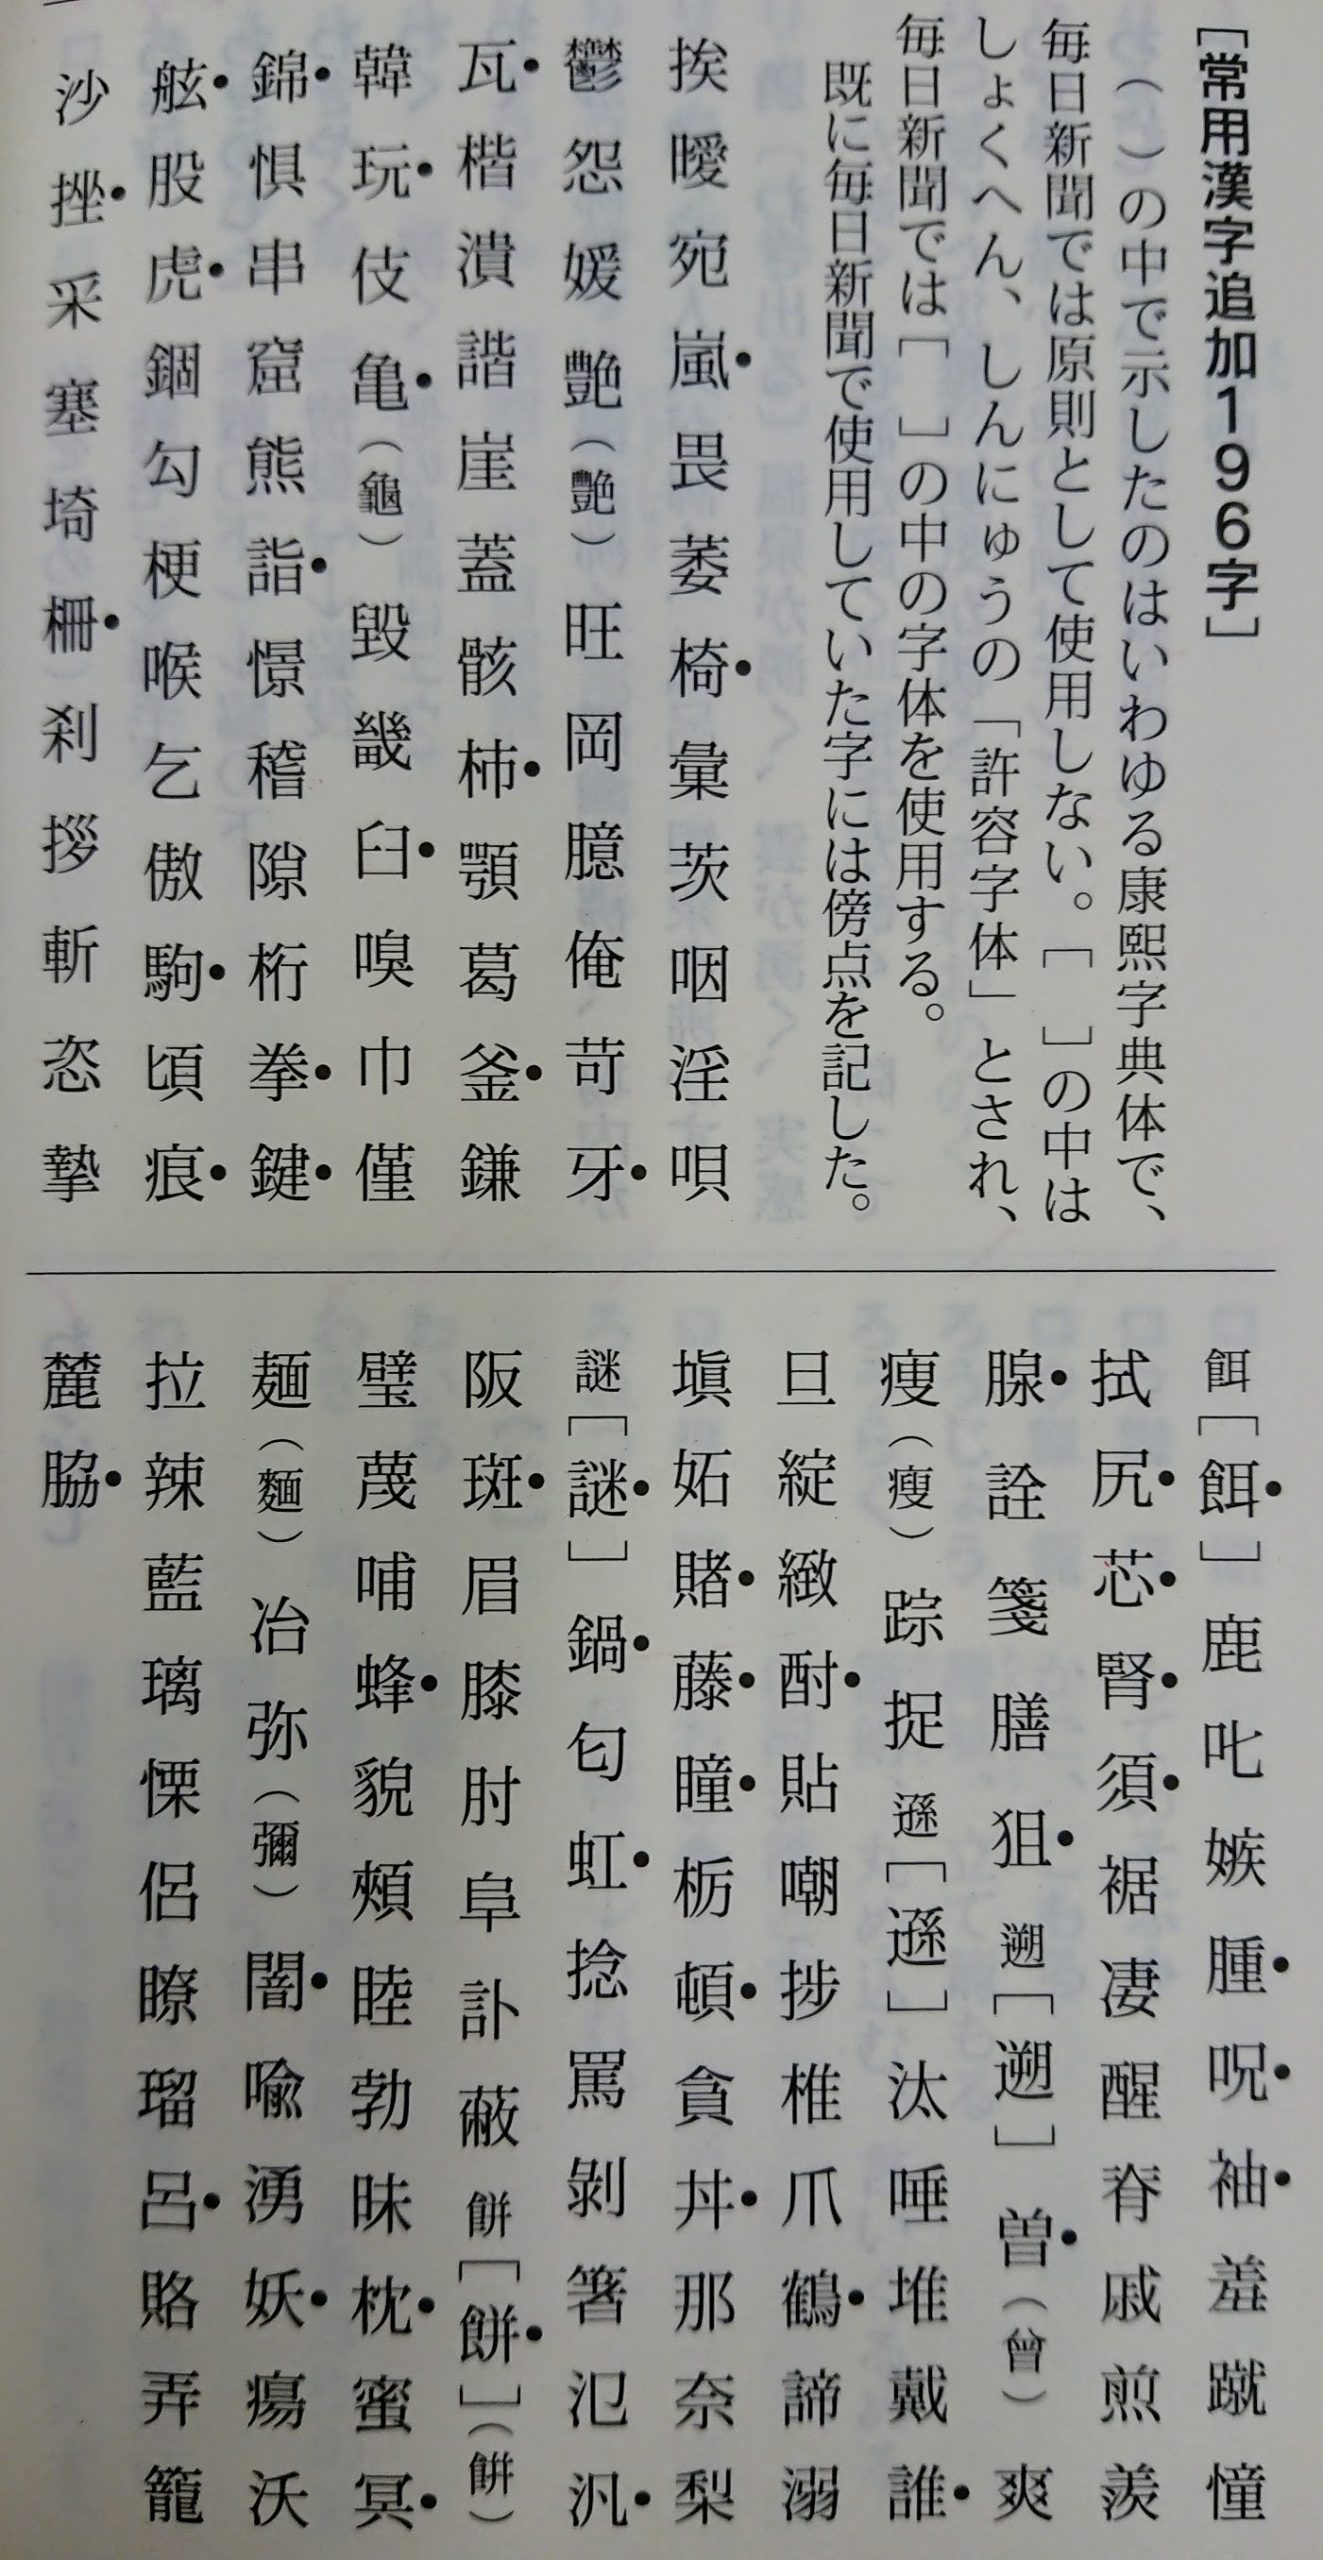 世論調査で 振り仮名をつけるのが望ましい 漢字 新聞では 毎日ことば